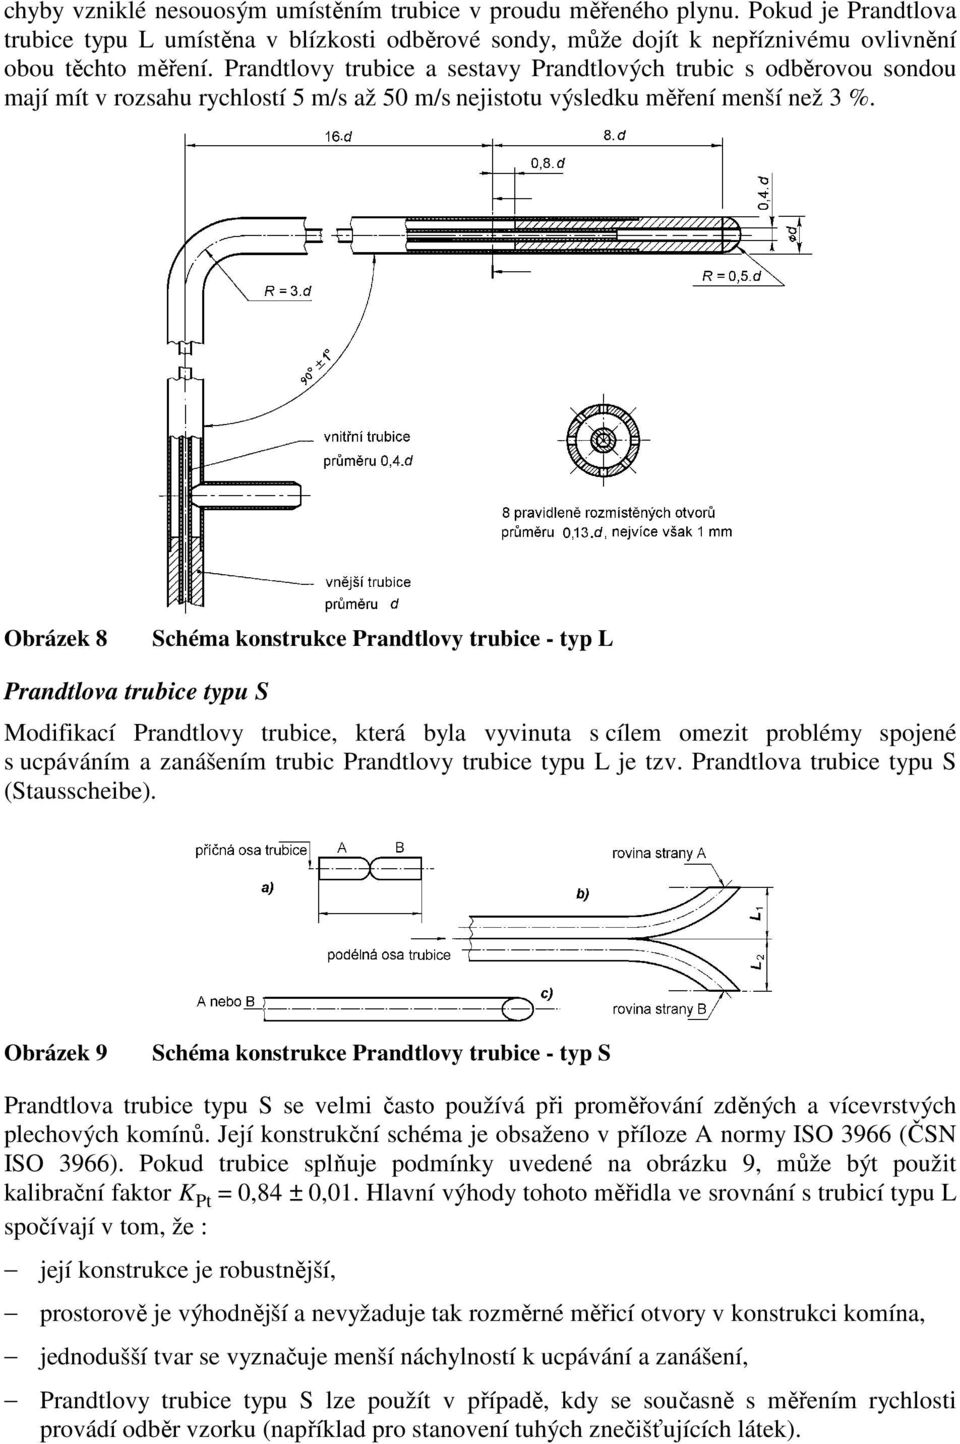 Obrázek 8 Schéma konstrukce Prandtlovy trubice - typ L Prandtlova trubice typu S Modifikací Prandtlovy trubice, která byla vyvinuta s cílem omezit problémy spojené s ucpáváním a zanášením trubic